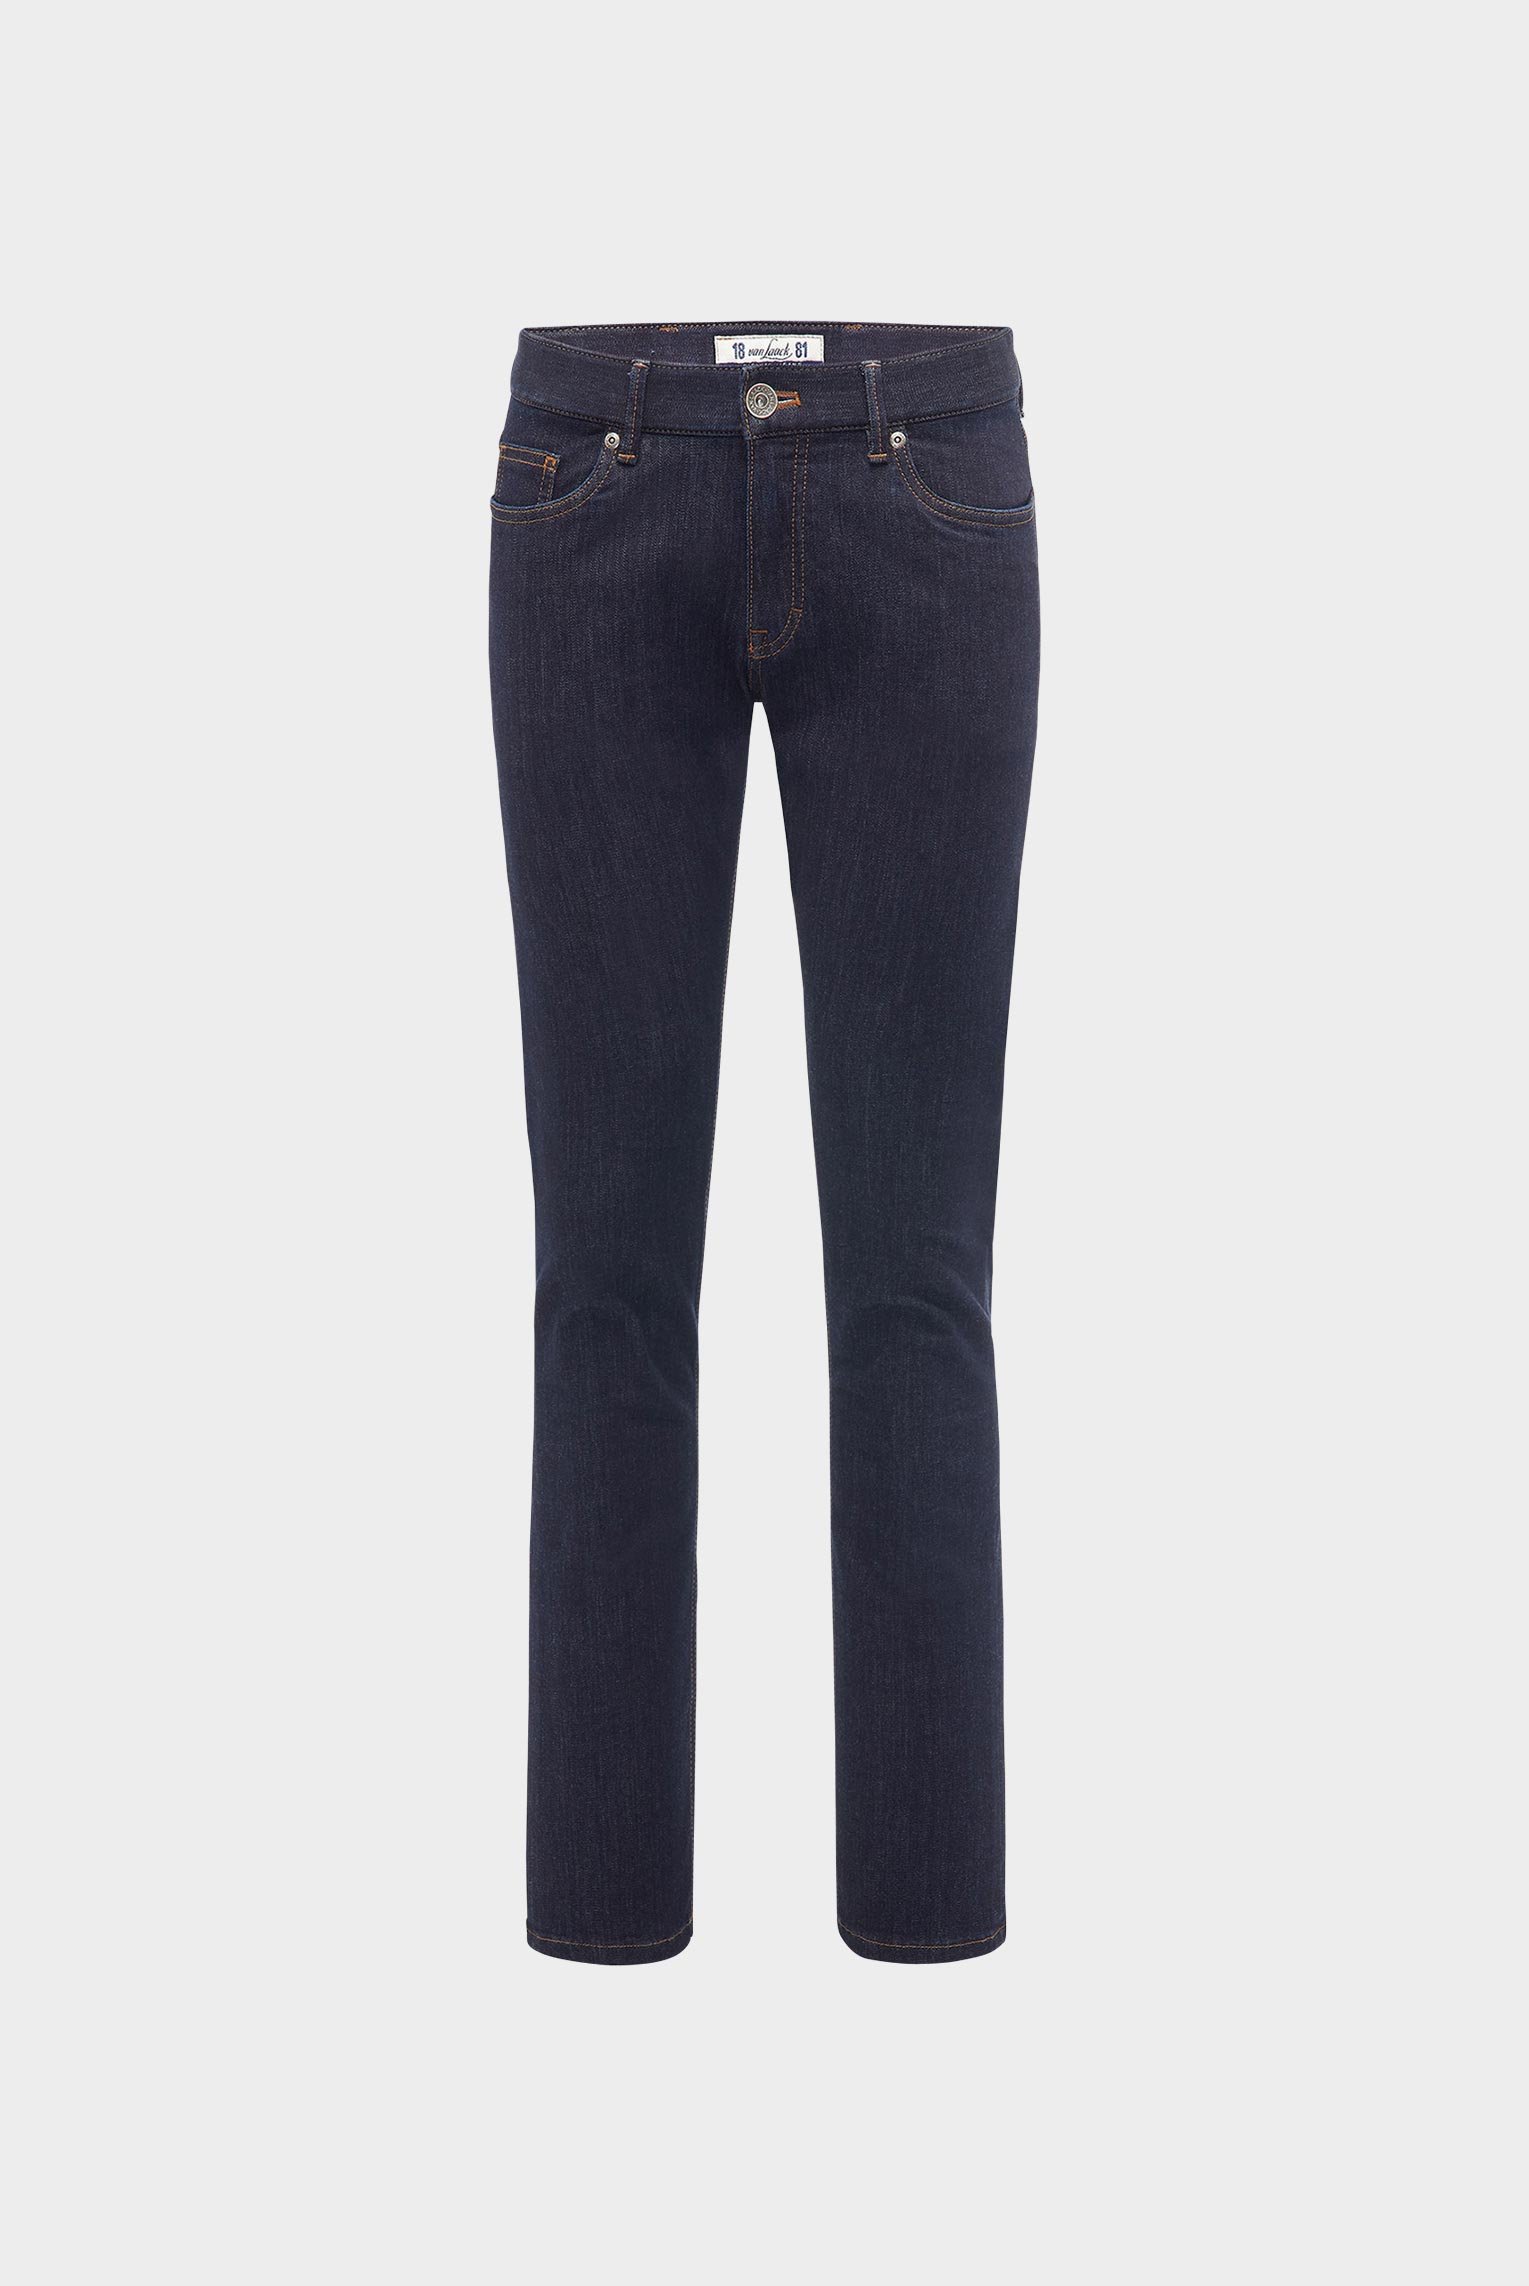 Jeans & Hosen+Hochwertige Herren Jeanshose aus Baumwollmischgewebe Slim Fit Dunkelblau+80.7857..J00117.790.31N